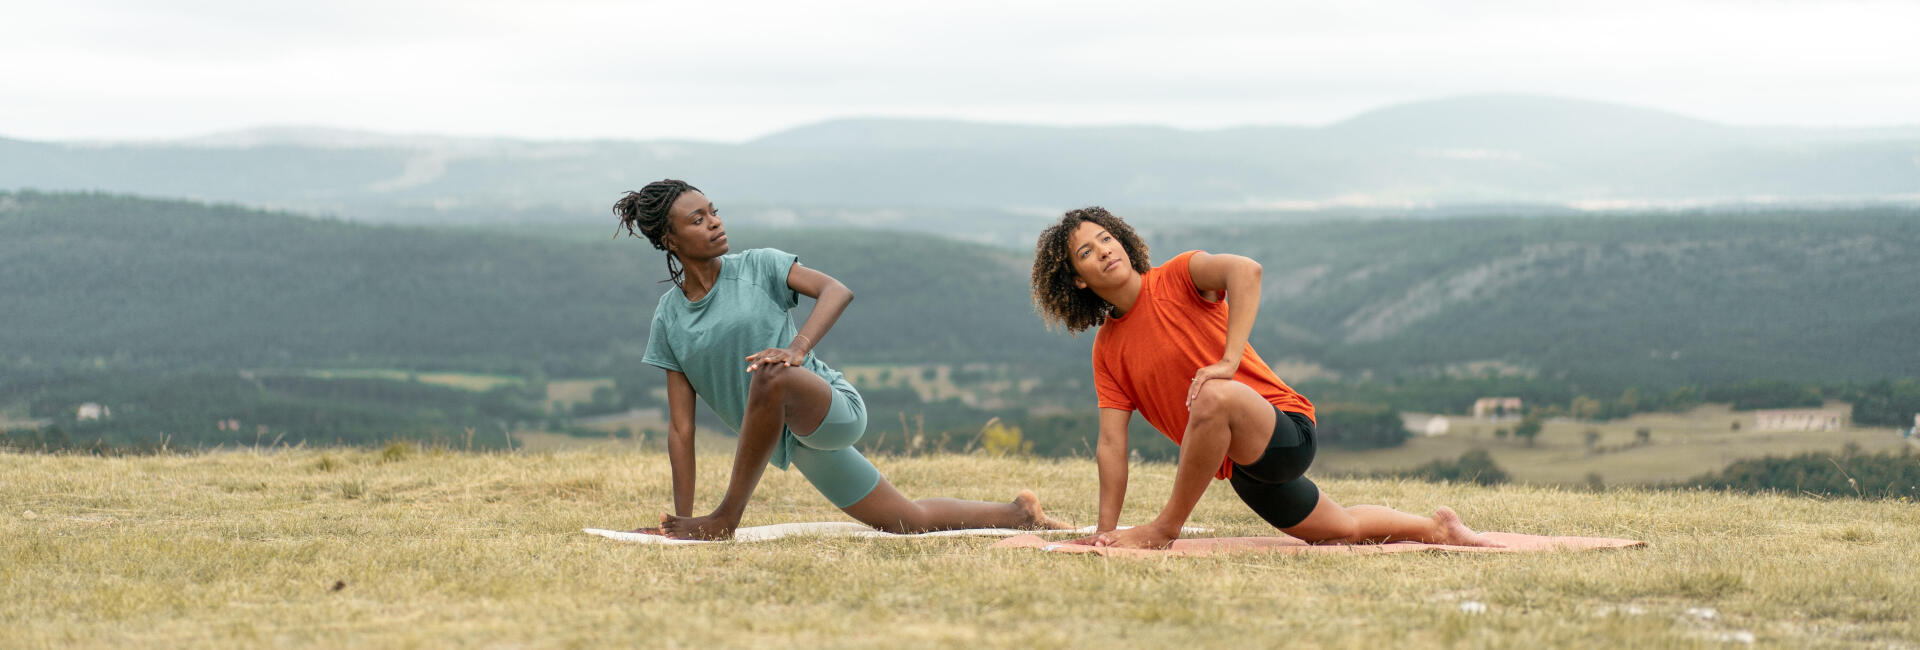 5 sätt Yoga kan göra dig bättre på löpning, cykling och klättring